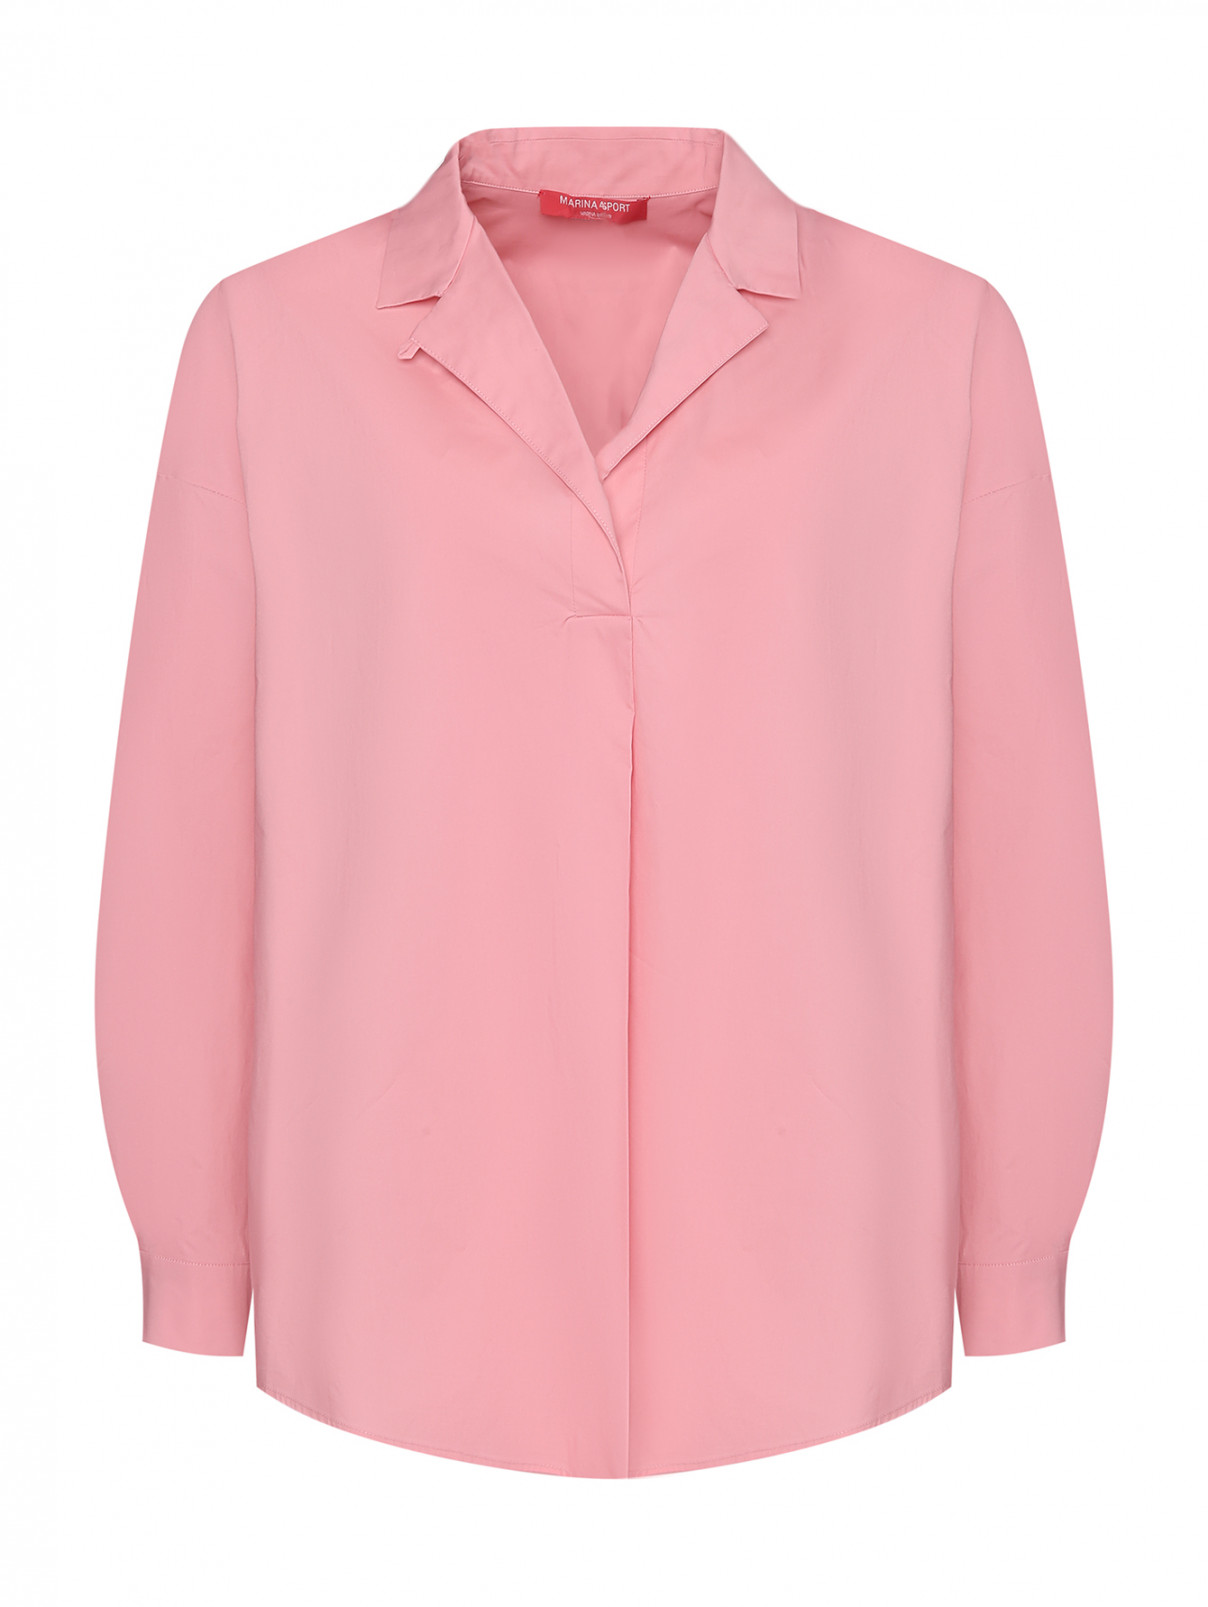 Свободная блуза из хлопка Marina Rinaldi  –  Общий вид  – Цвет:  Розовый